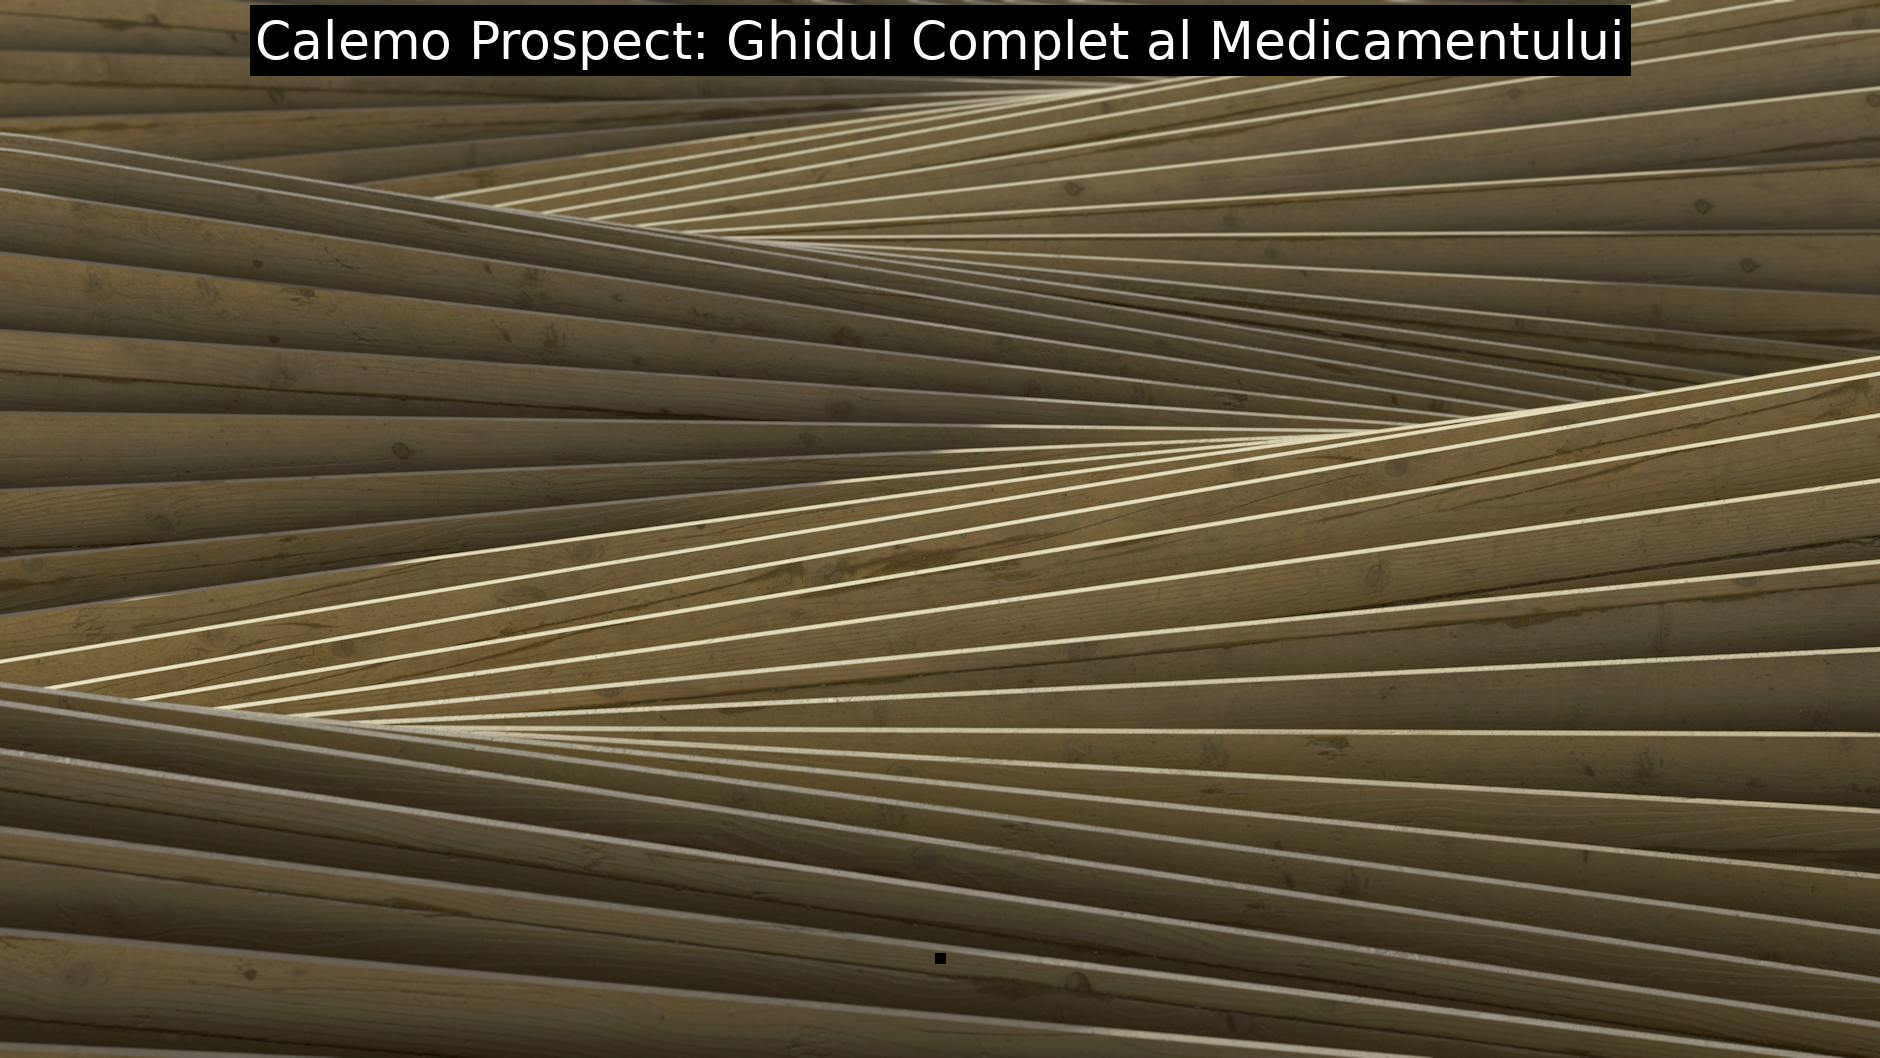 Calemo Prospect: Ghidul Complet al Medicamentului